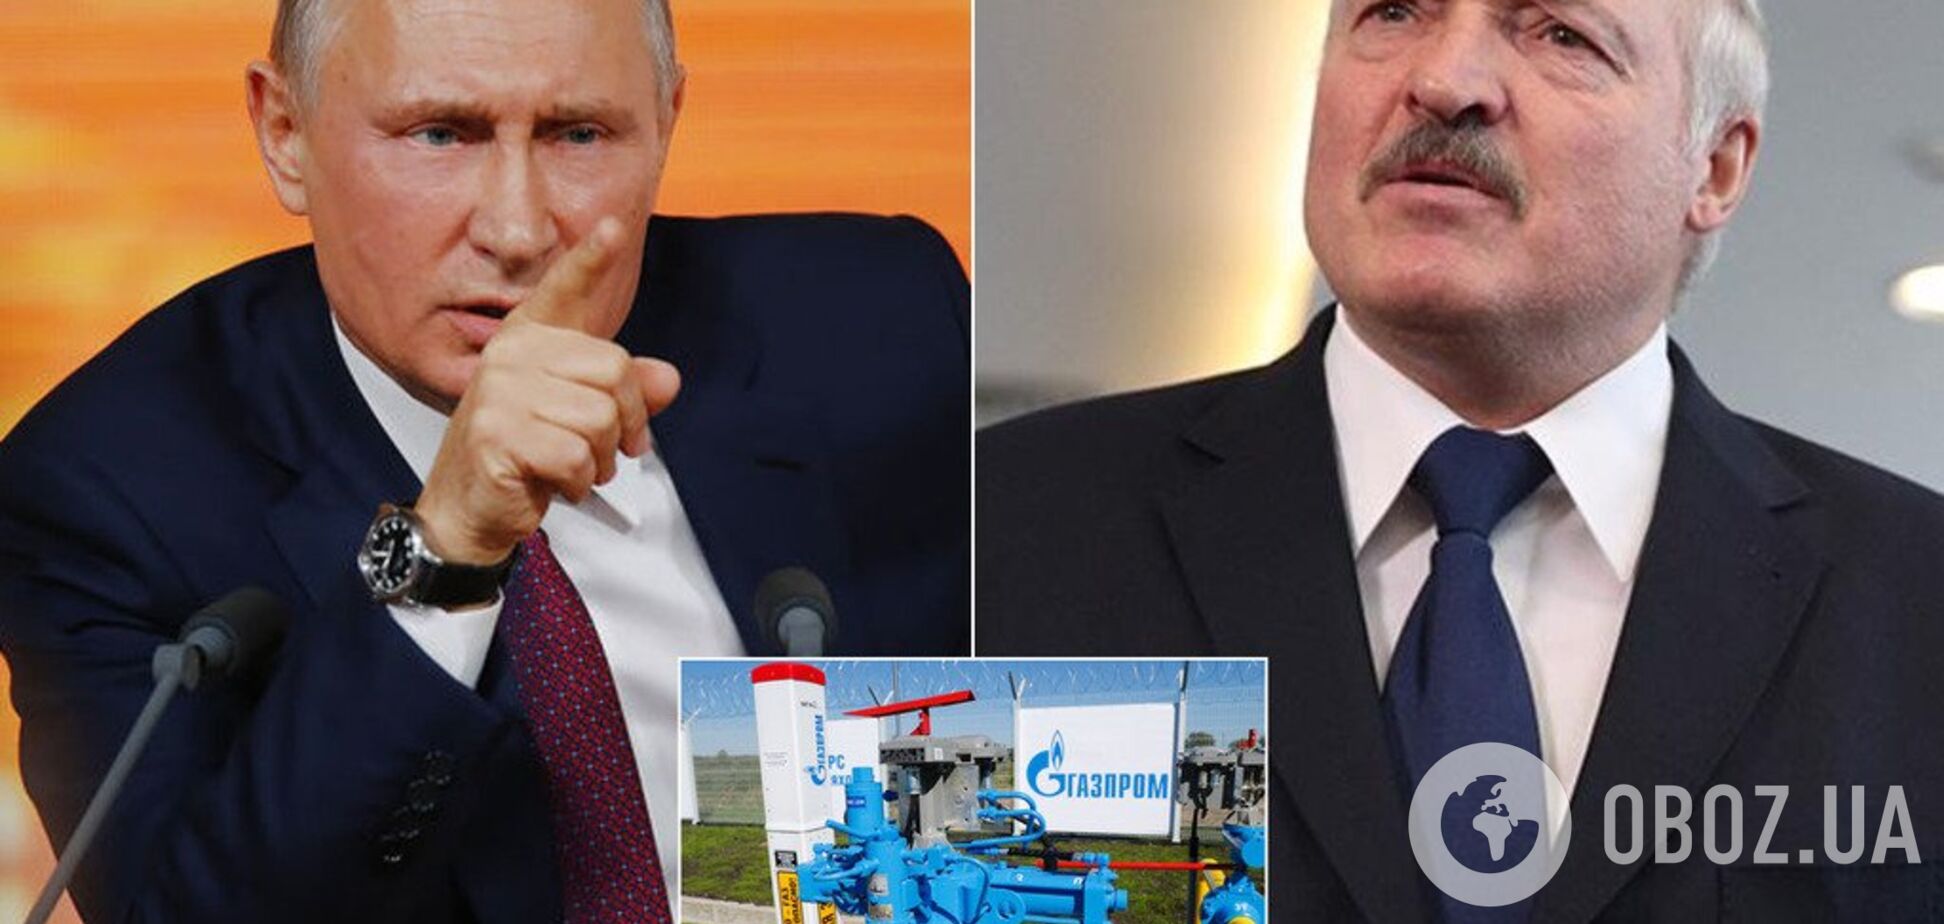 'Где такое видано?' Лукашенко набросился на Россию из-за газа